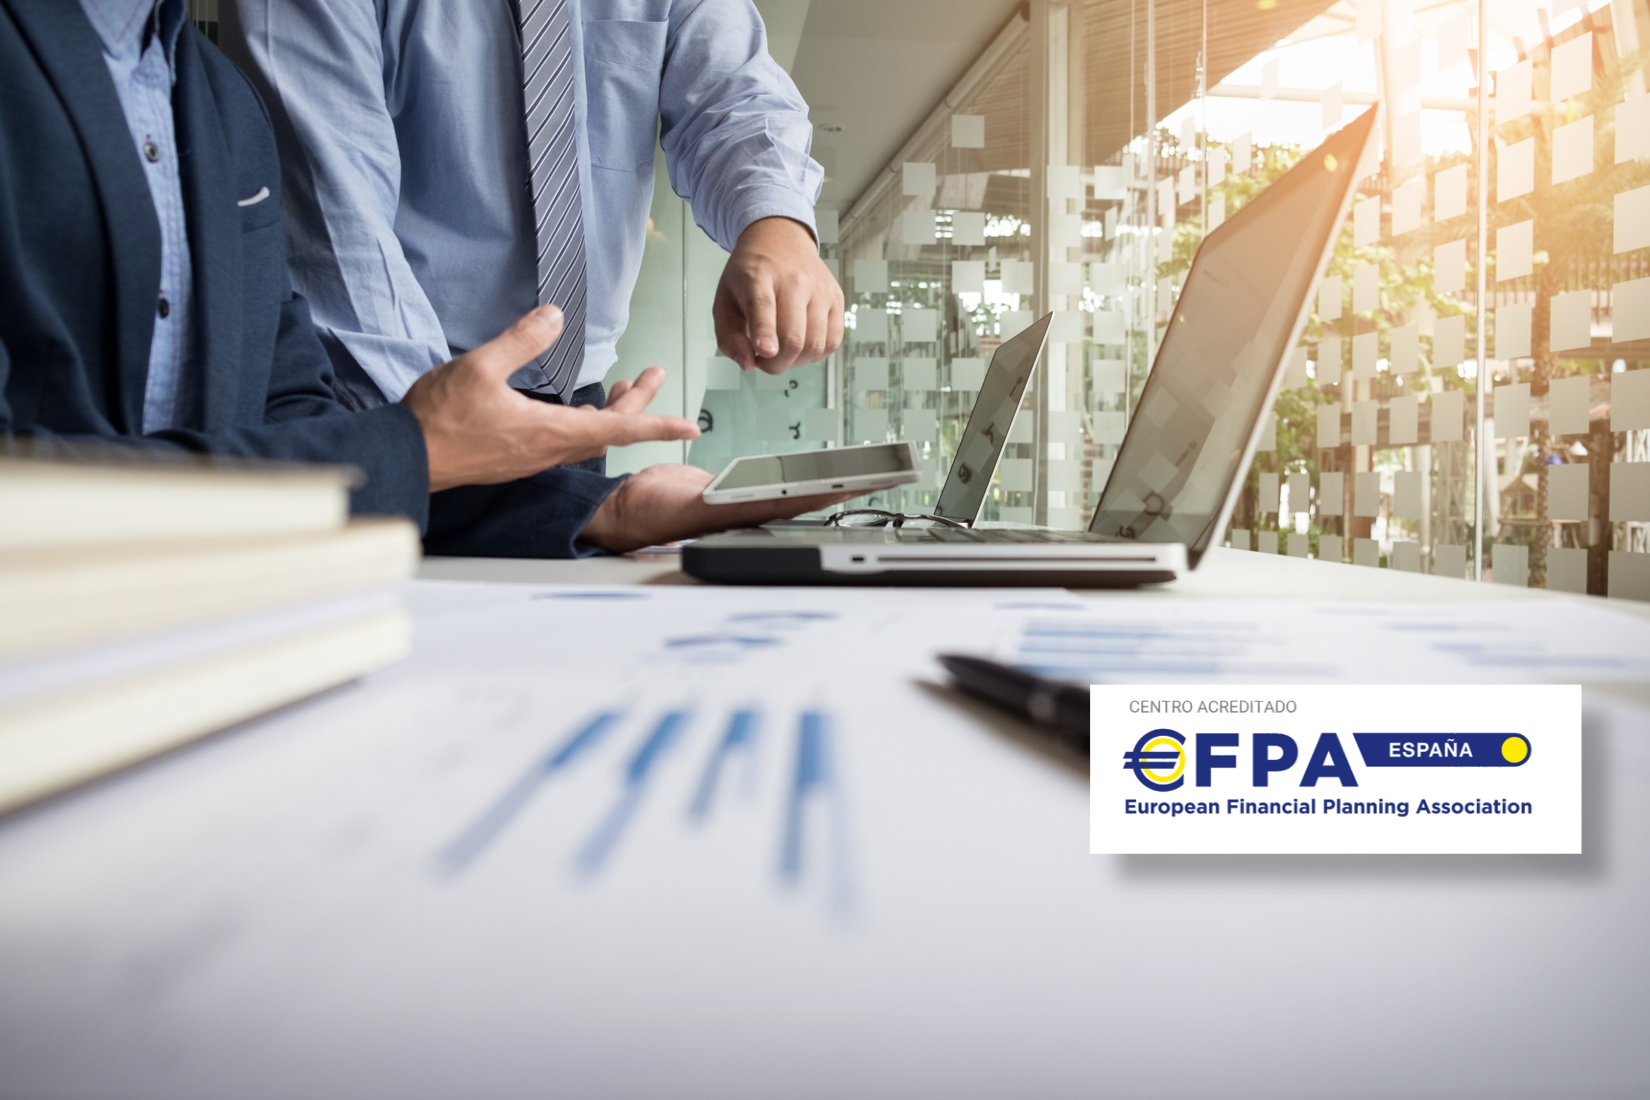 Curso de Asesor Financiero EIP - EFPA